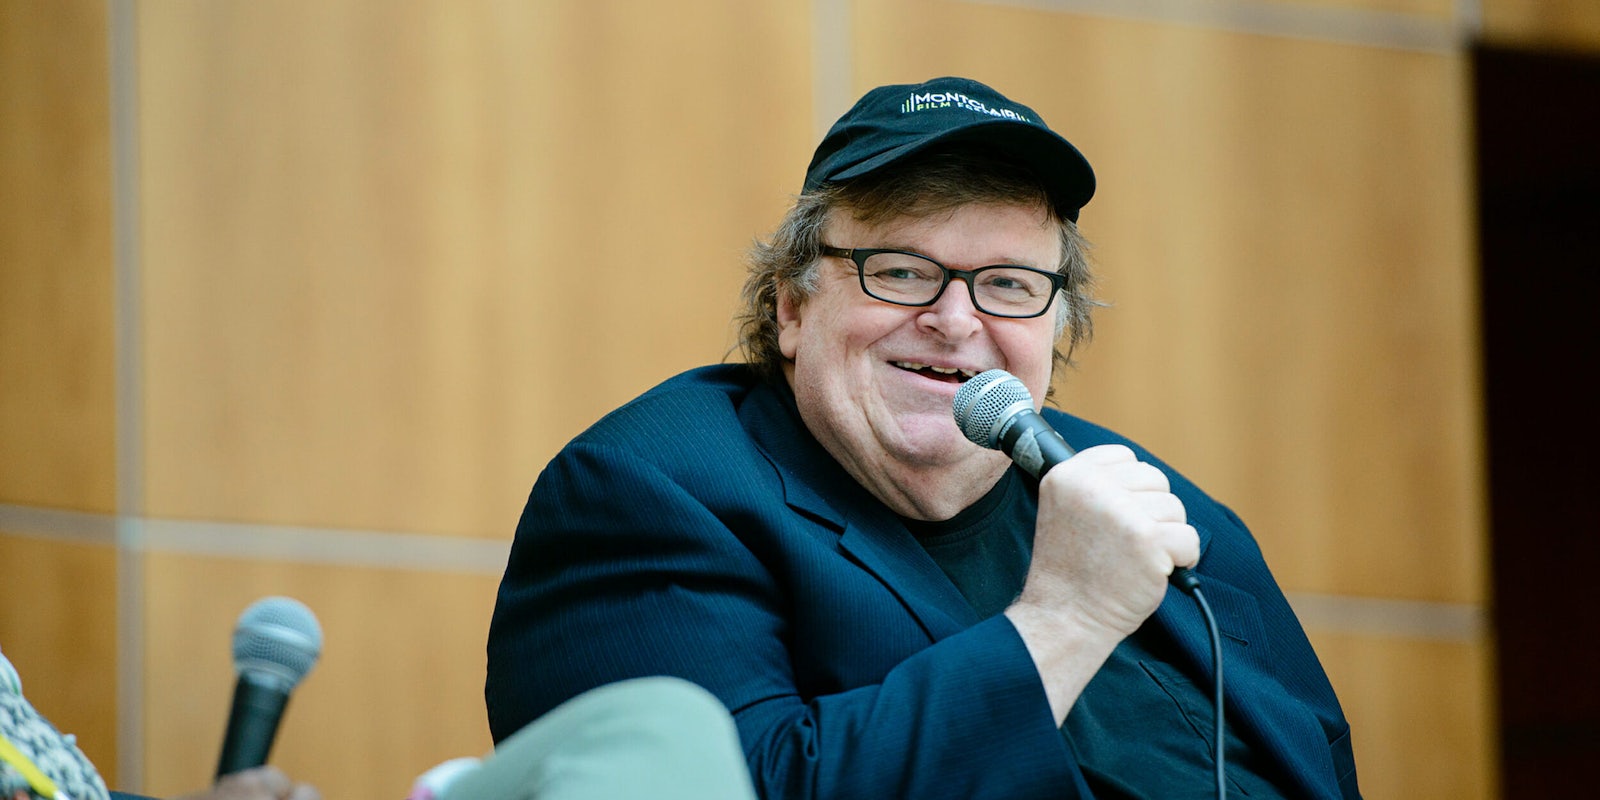 Michael Moore is launching Trumpileaks.